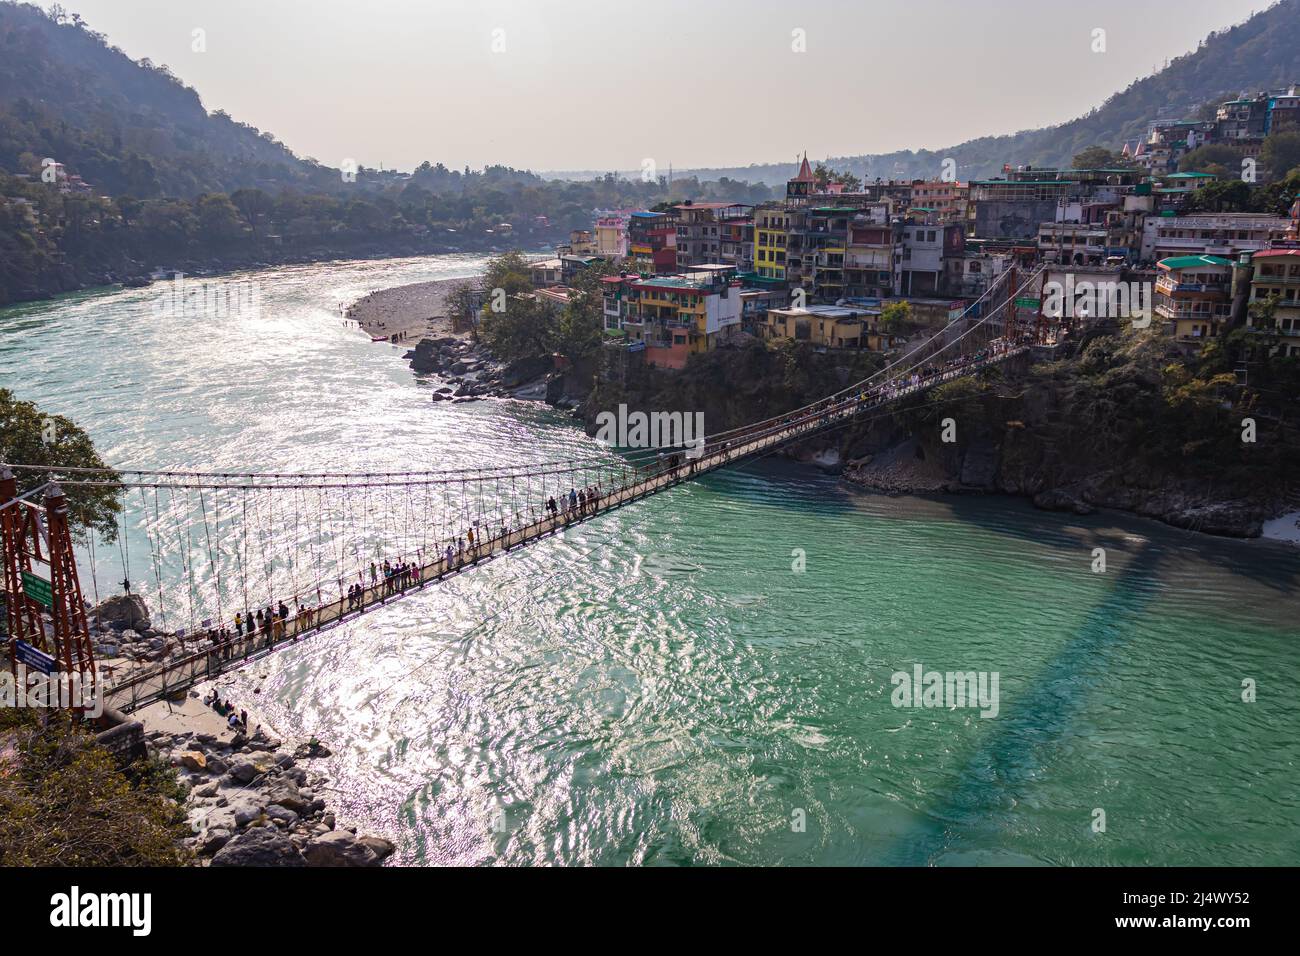 lakshman jhula pont en suspension de fer au-dessus de la rivière ganges à partir d'un angle plat image est prise à rishikesh uttrakhet inde le 15 2022 mars. Banque D'Images